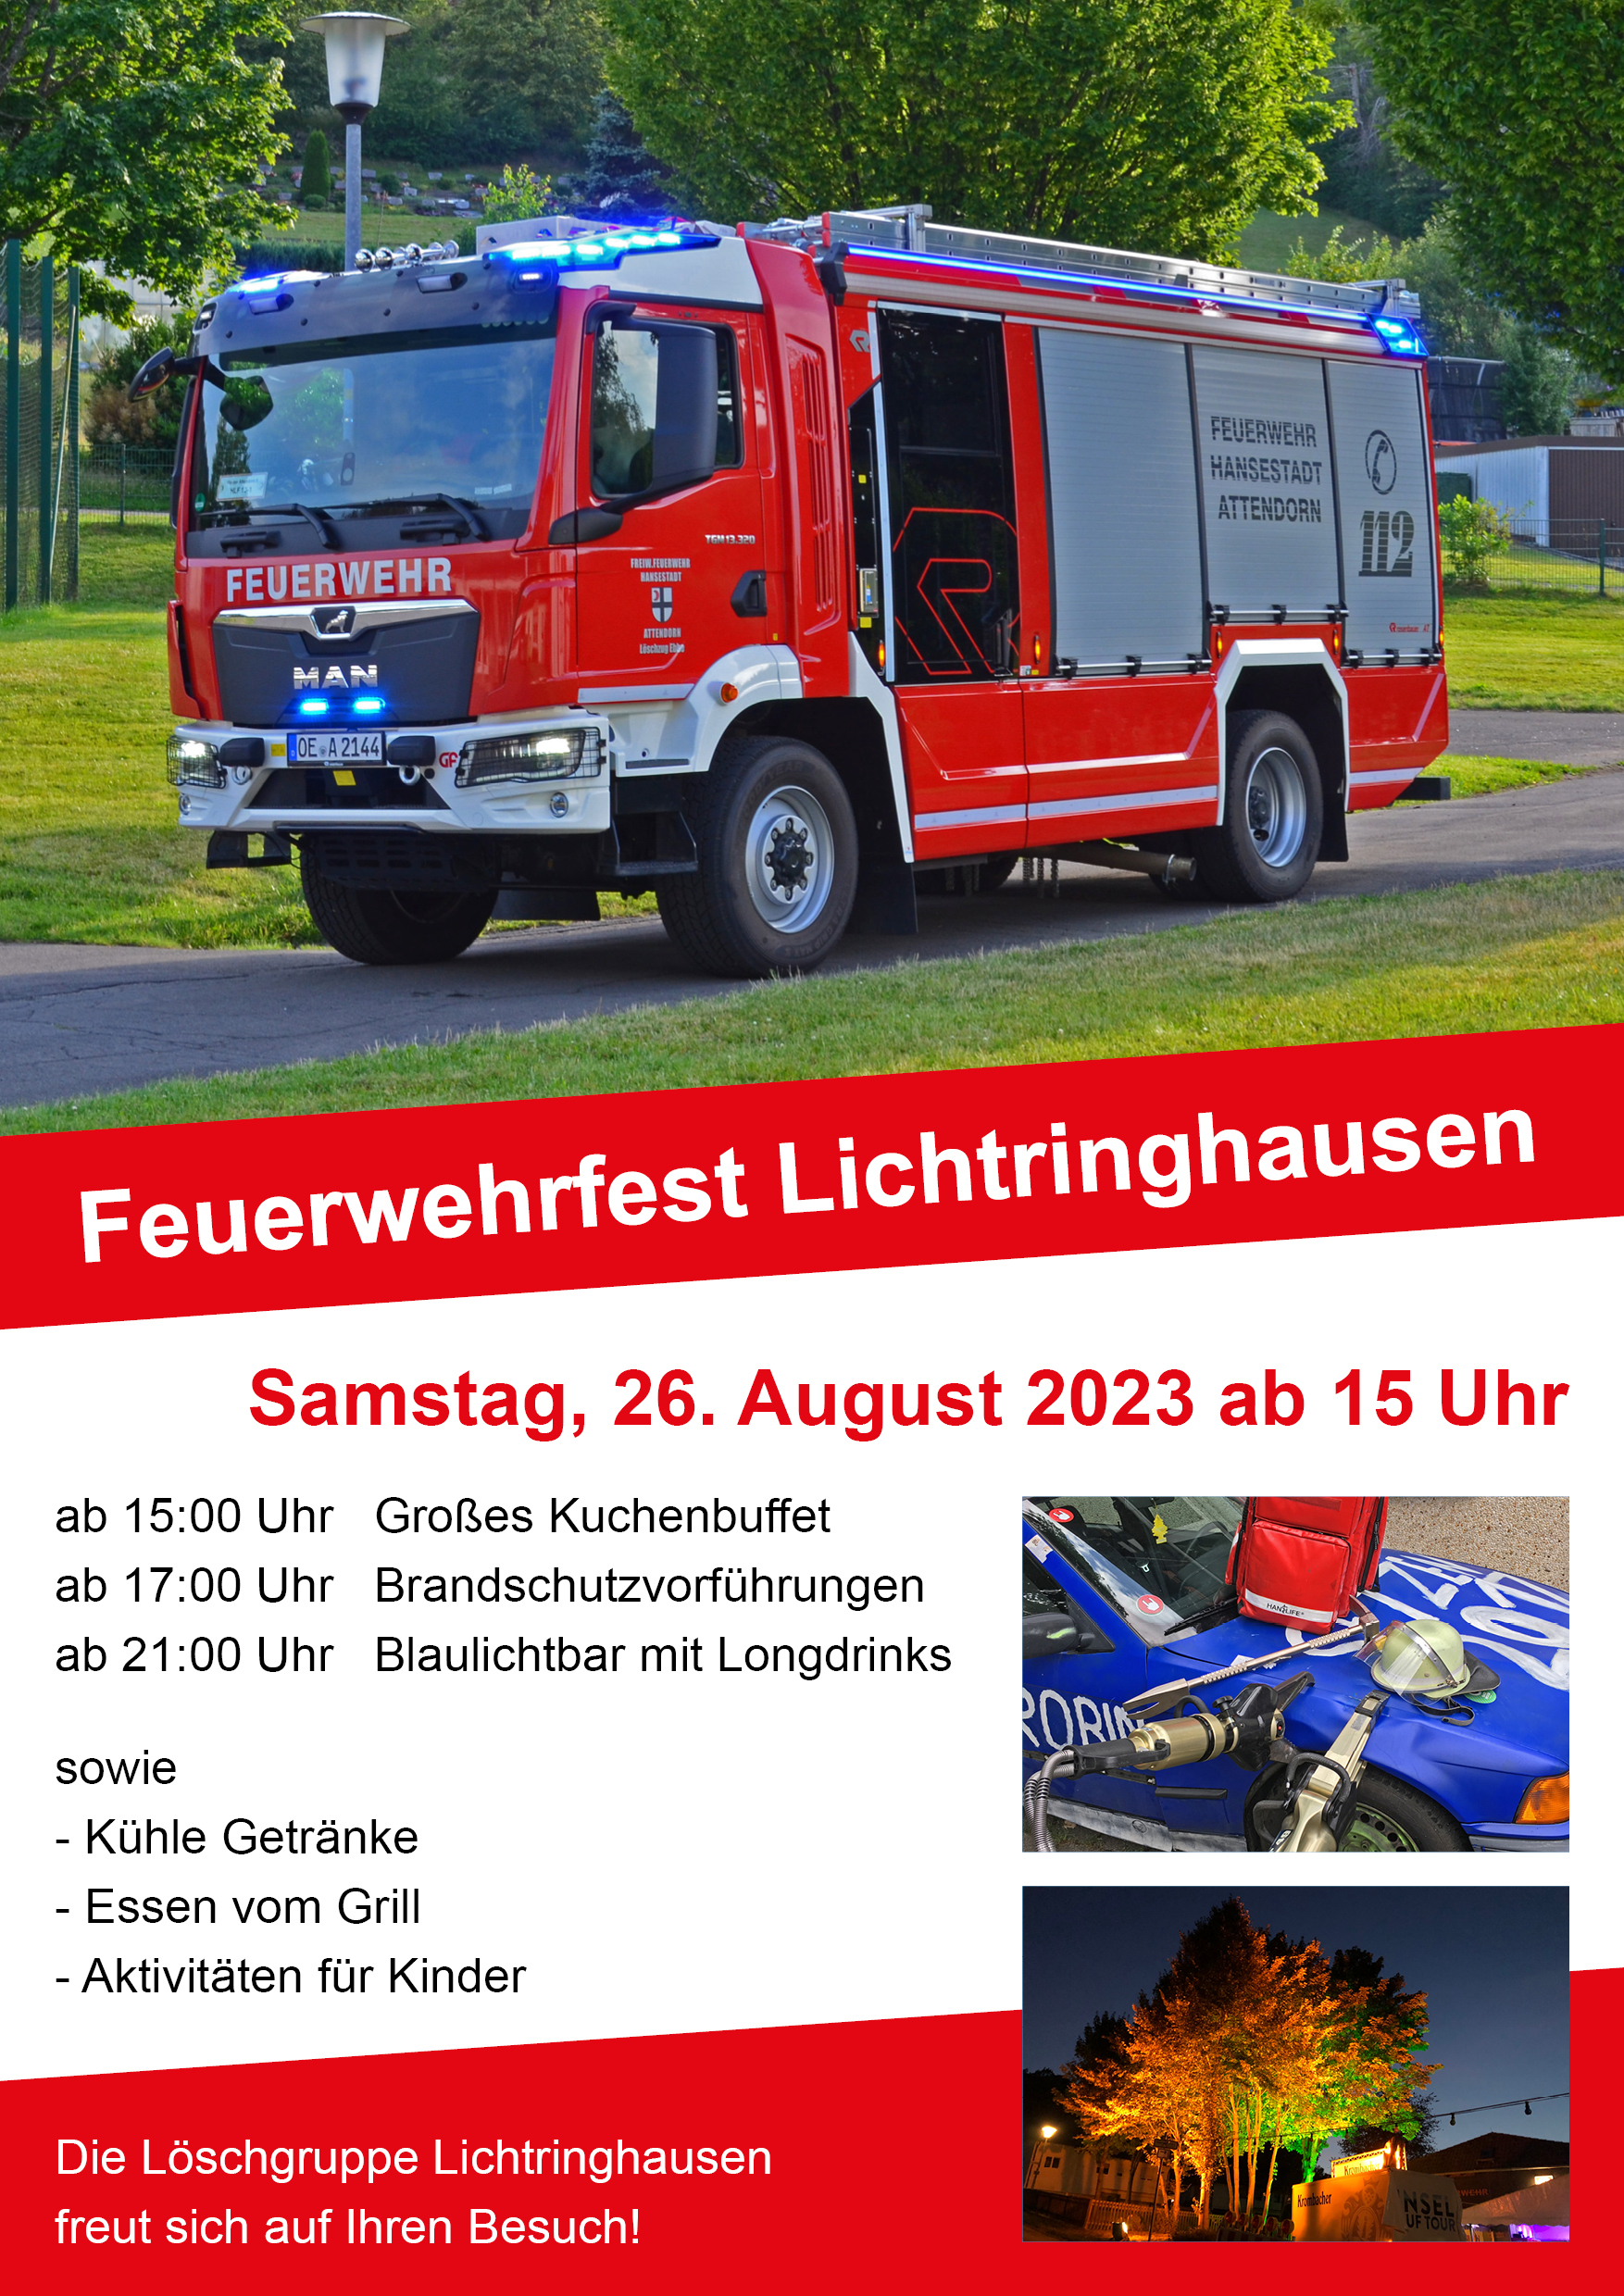 Feuerwehr Lichtringhausen feiert